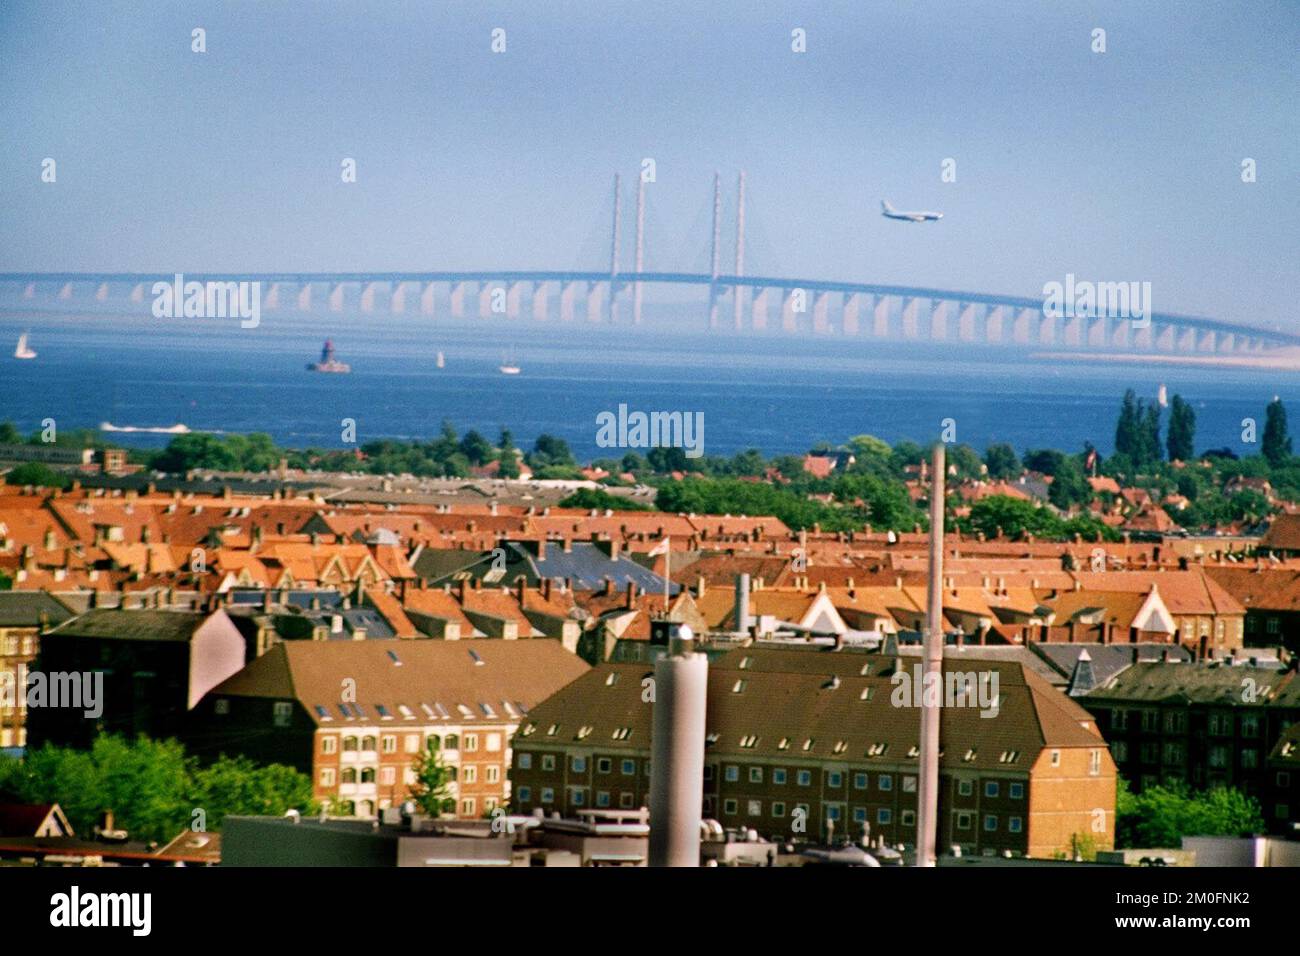 PA PHOTOS/POLFOTO - NUR ZUR VERWENDUNG in Großbritannien: Die Resund-Brücke ist die Brücke, die Dänemark und Schweden verbindet. Dieses Bild ist von dänischer Seite (Resundsbroen). Stockfoto